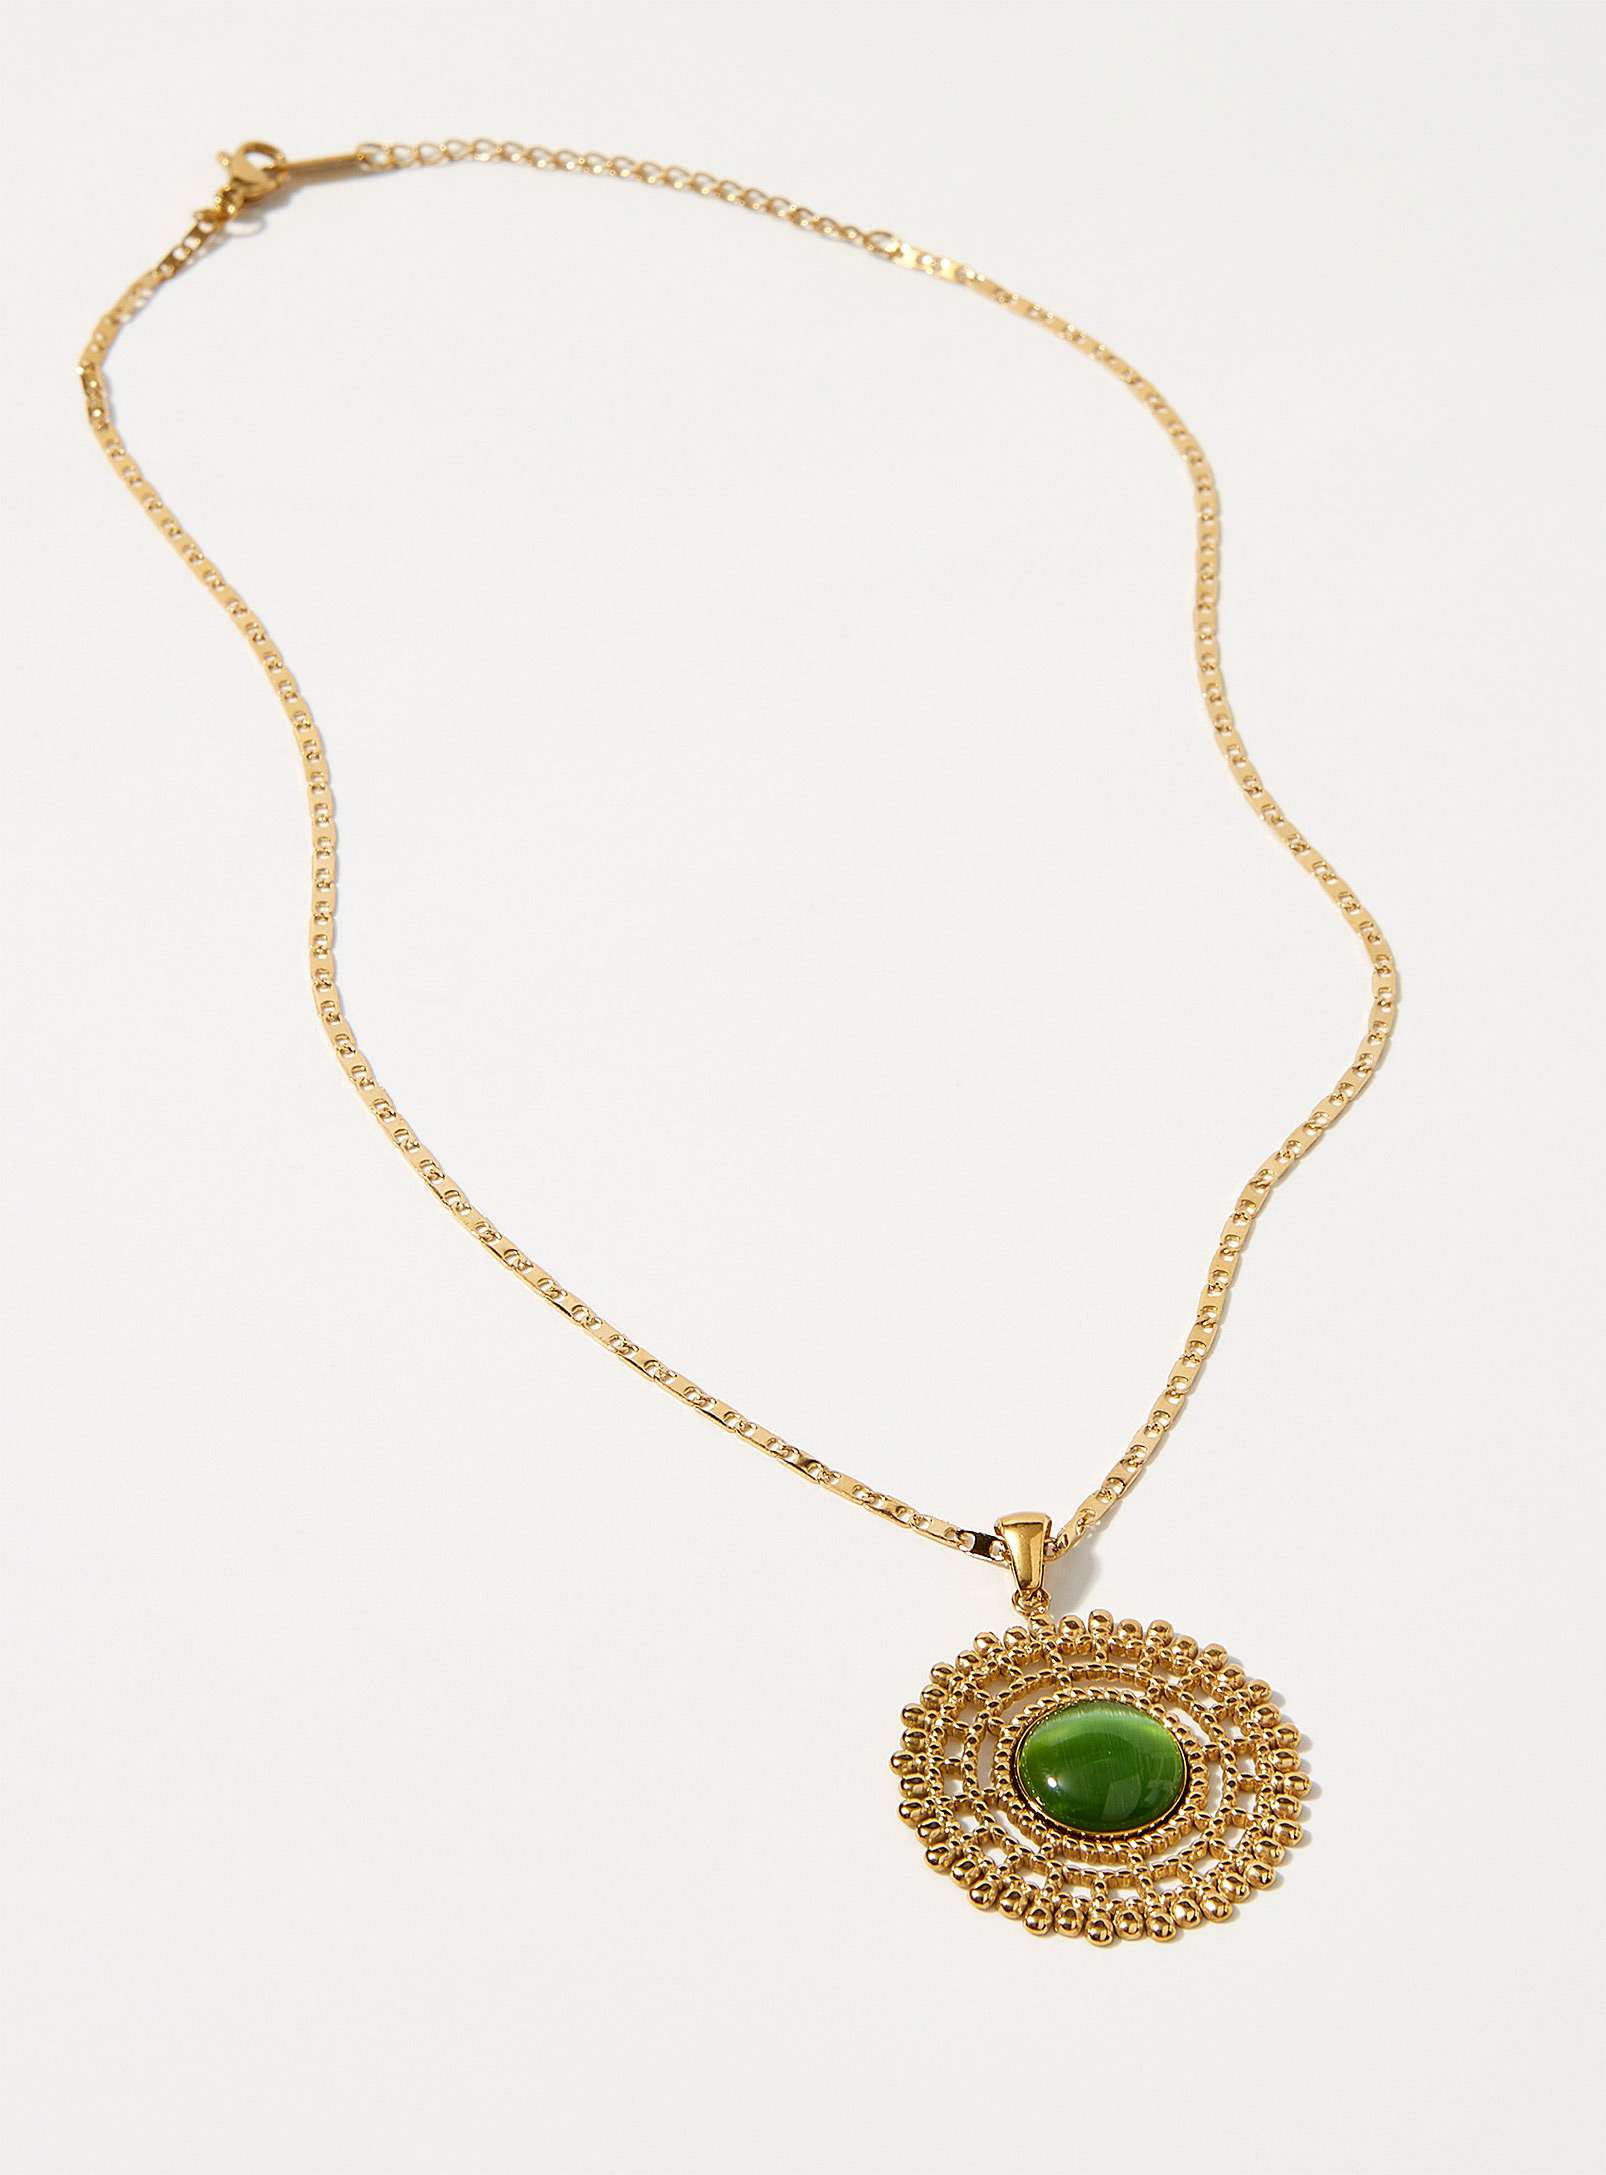 Simons - Women's Large green stone medallion chain